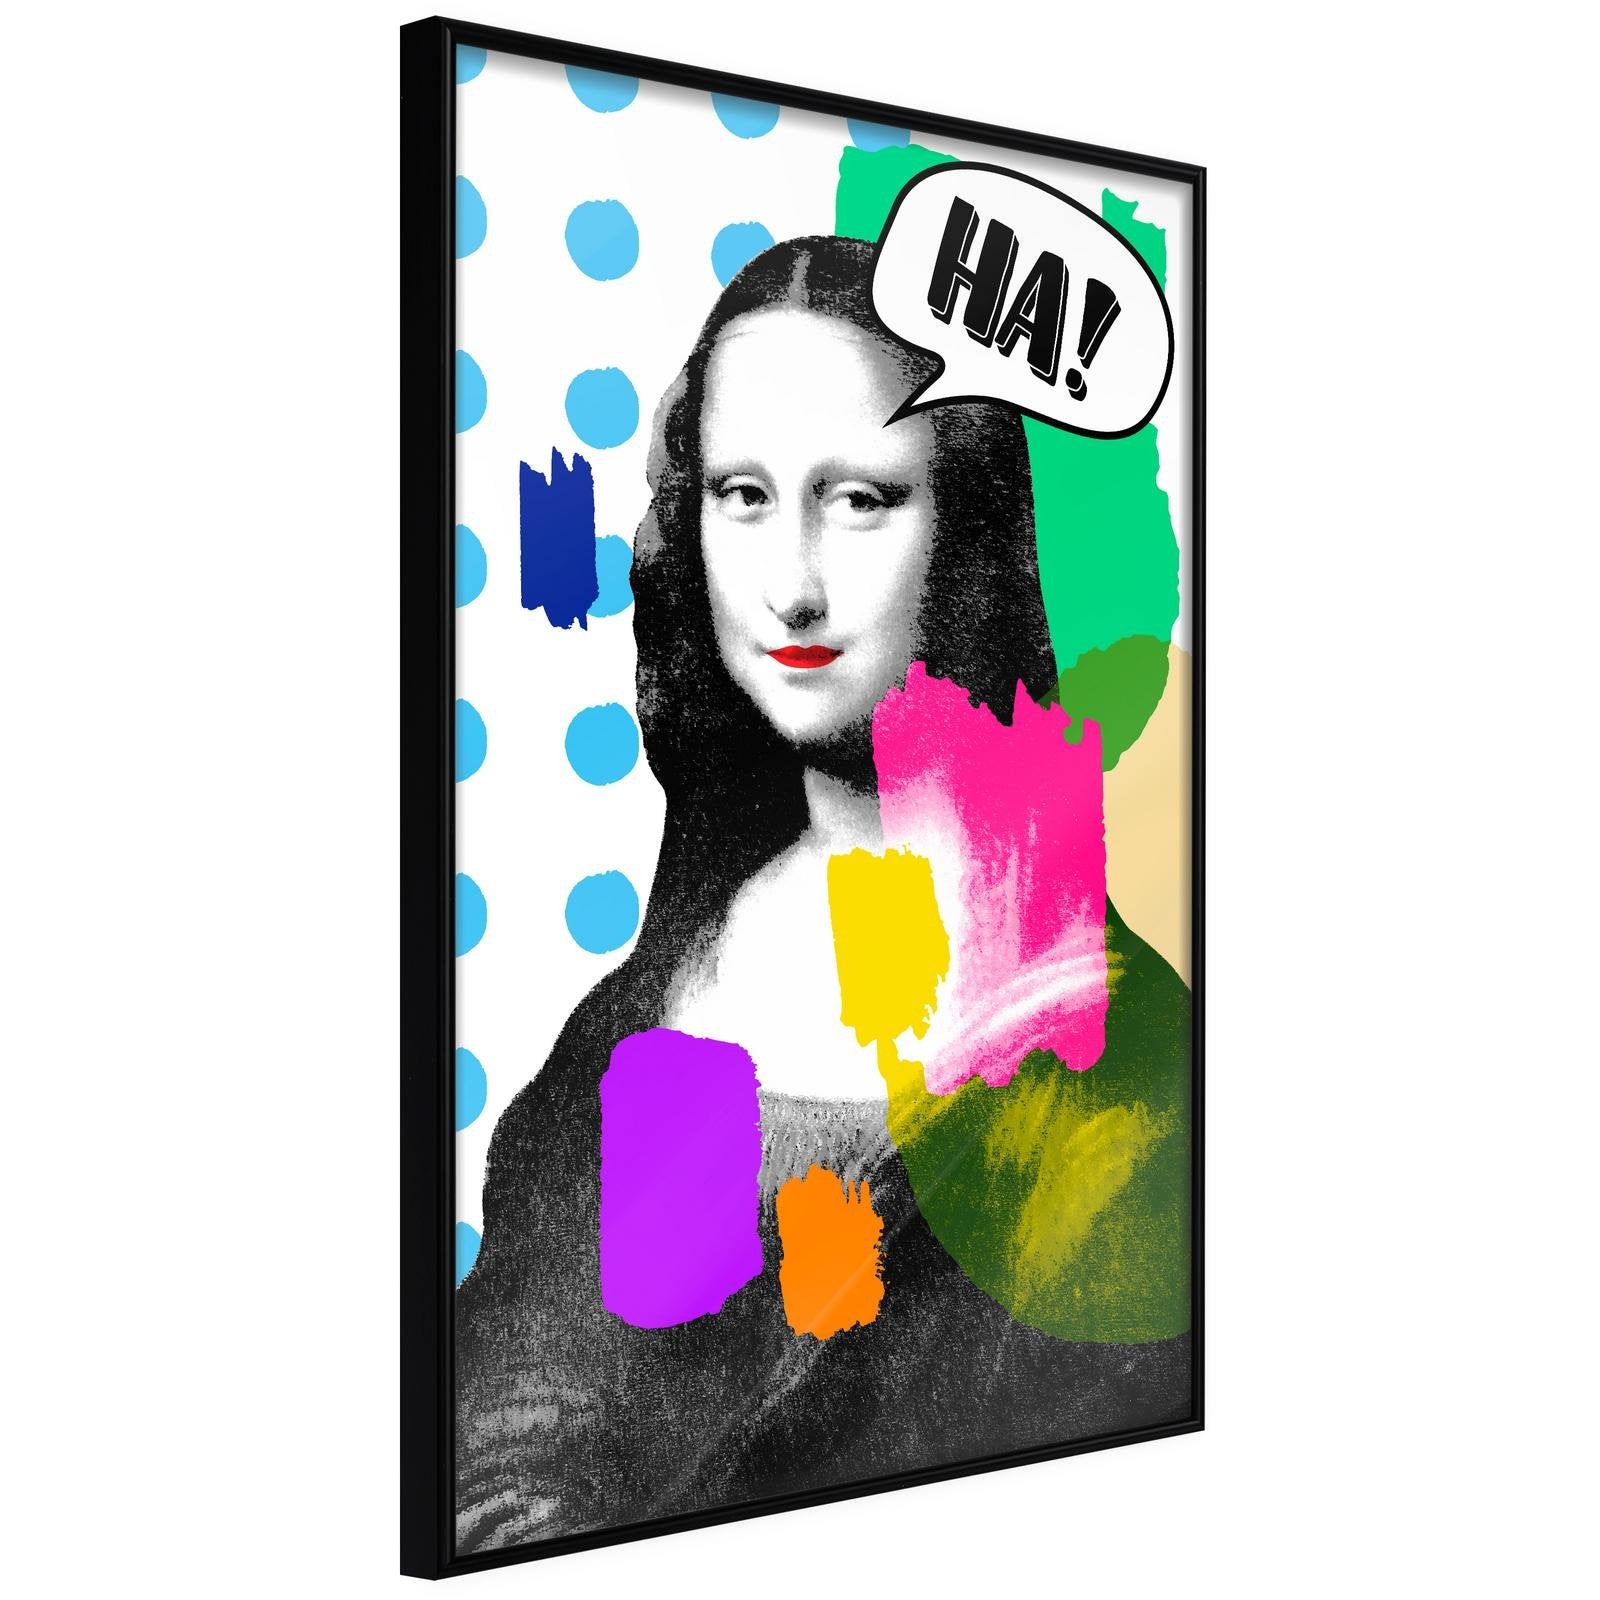 Poster Rire de Mona Lisa - "Ha !"